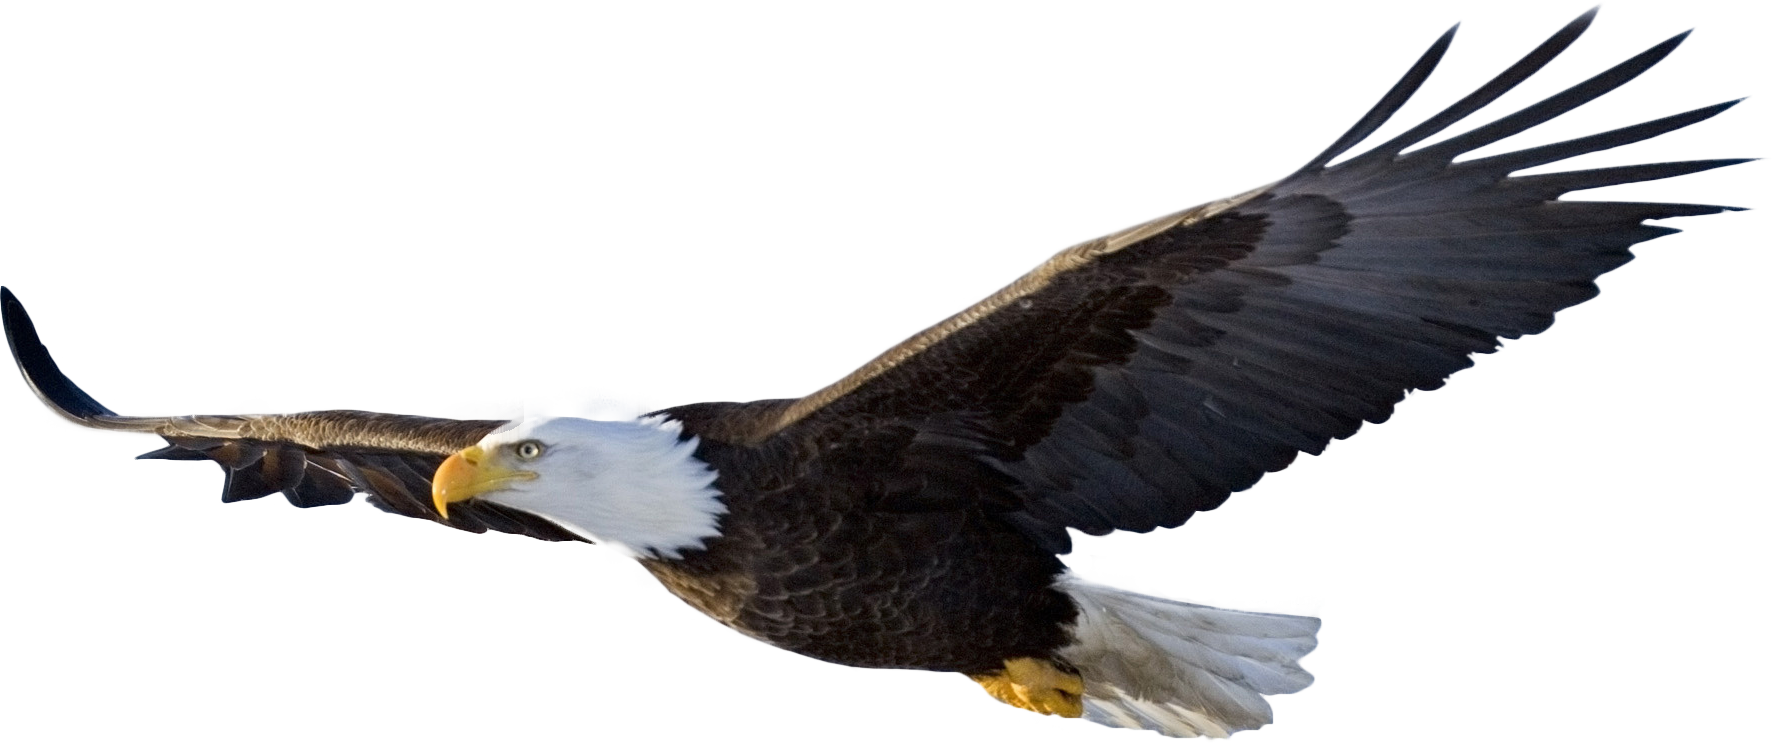 Eagle Png Image With Transpar